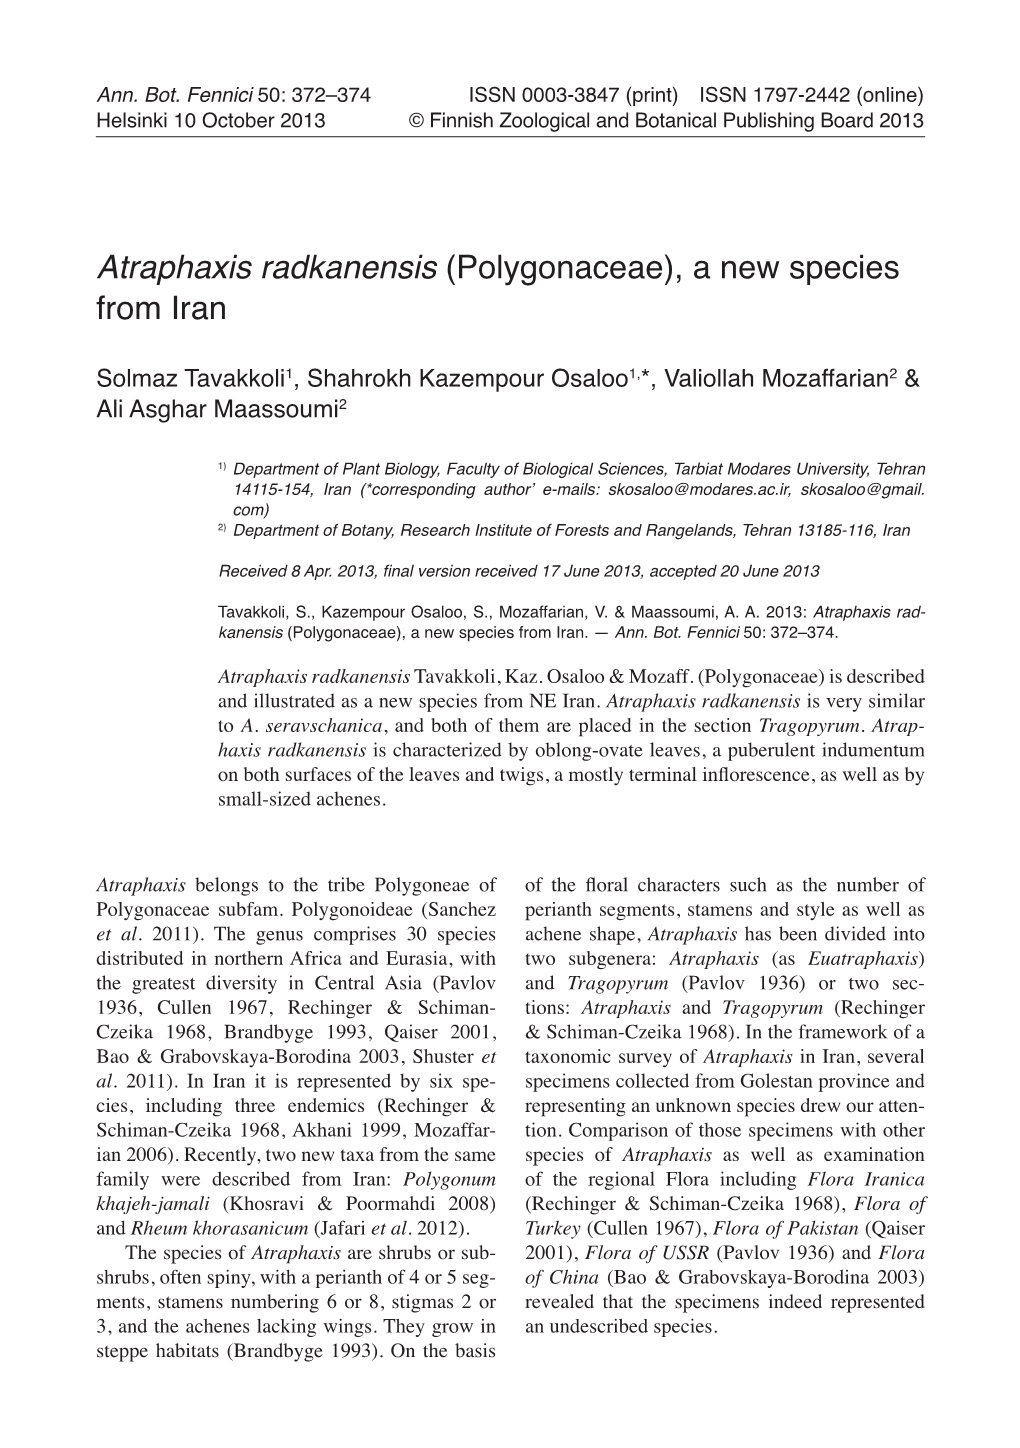 Atraphaxis Radkanensis (Polygonaceae), a New Species from Iran